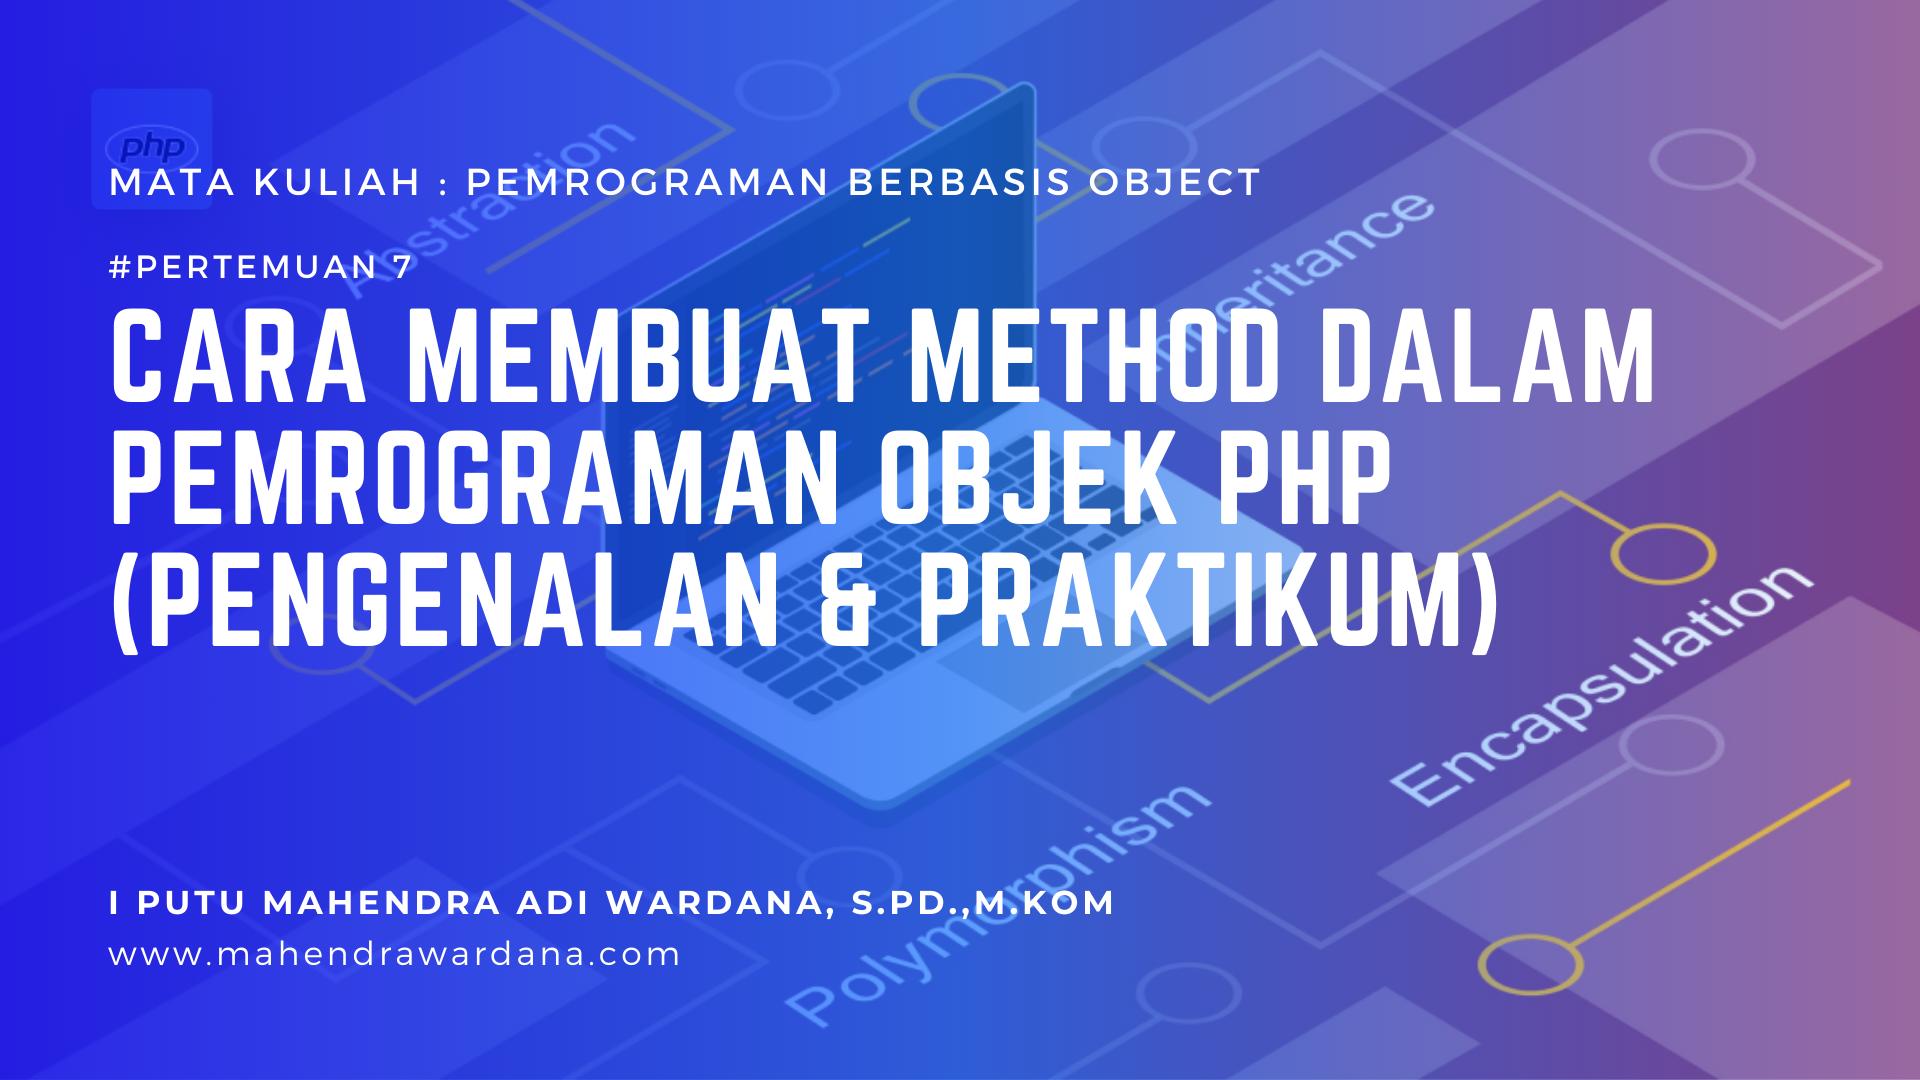 Pertemuan 7 - Cara Membuat Method dalam Pemrograman Objek PHP (Praktikum)